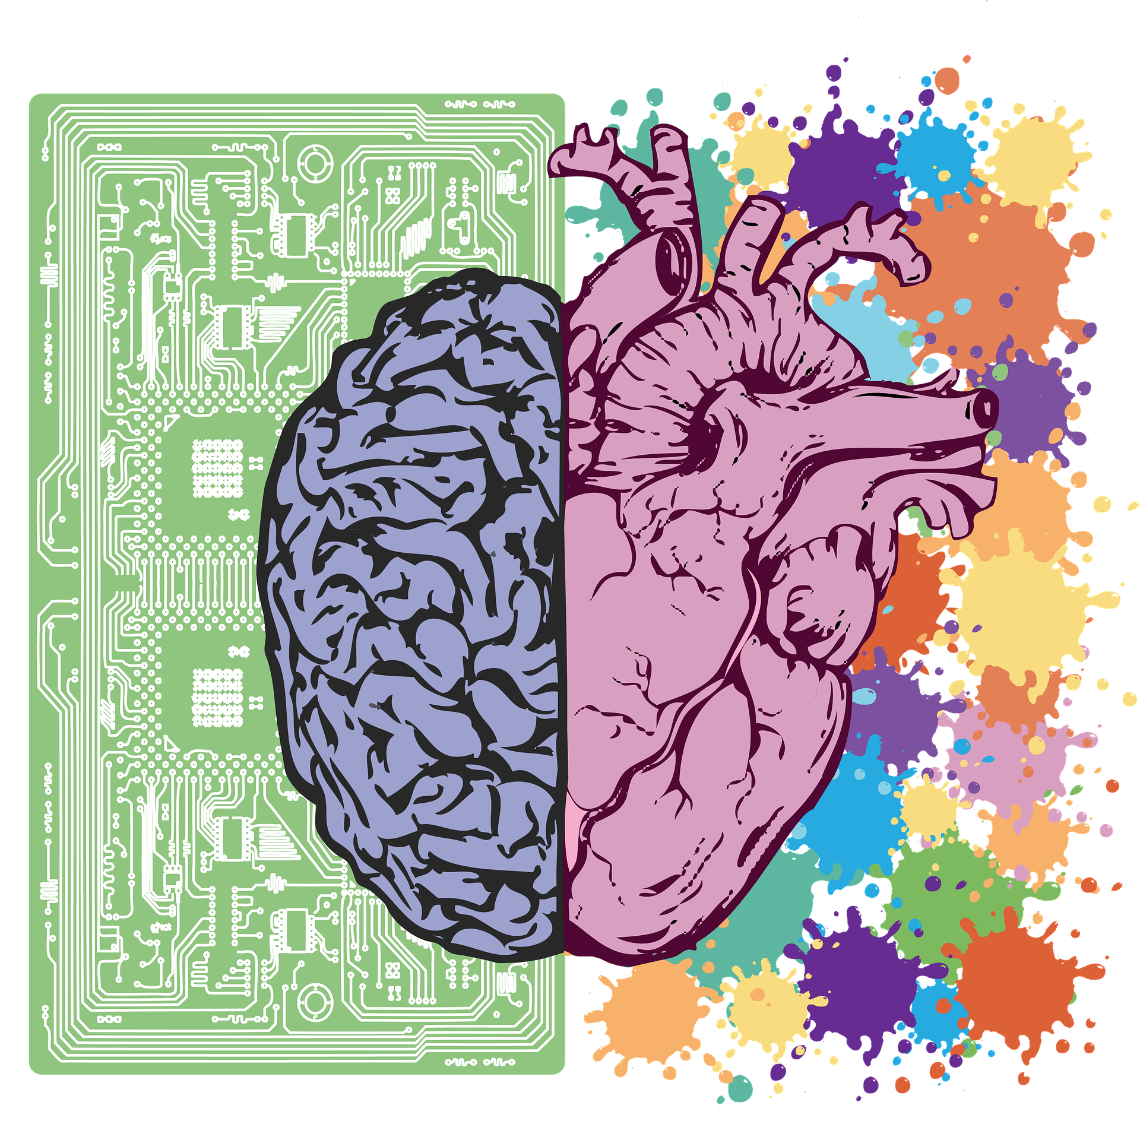 grafika po lewej półkula mózgowa na tle układu scalonego po prawej połowa serca na tle plam farby